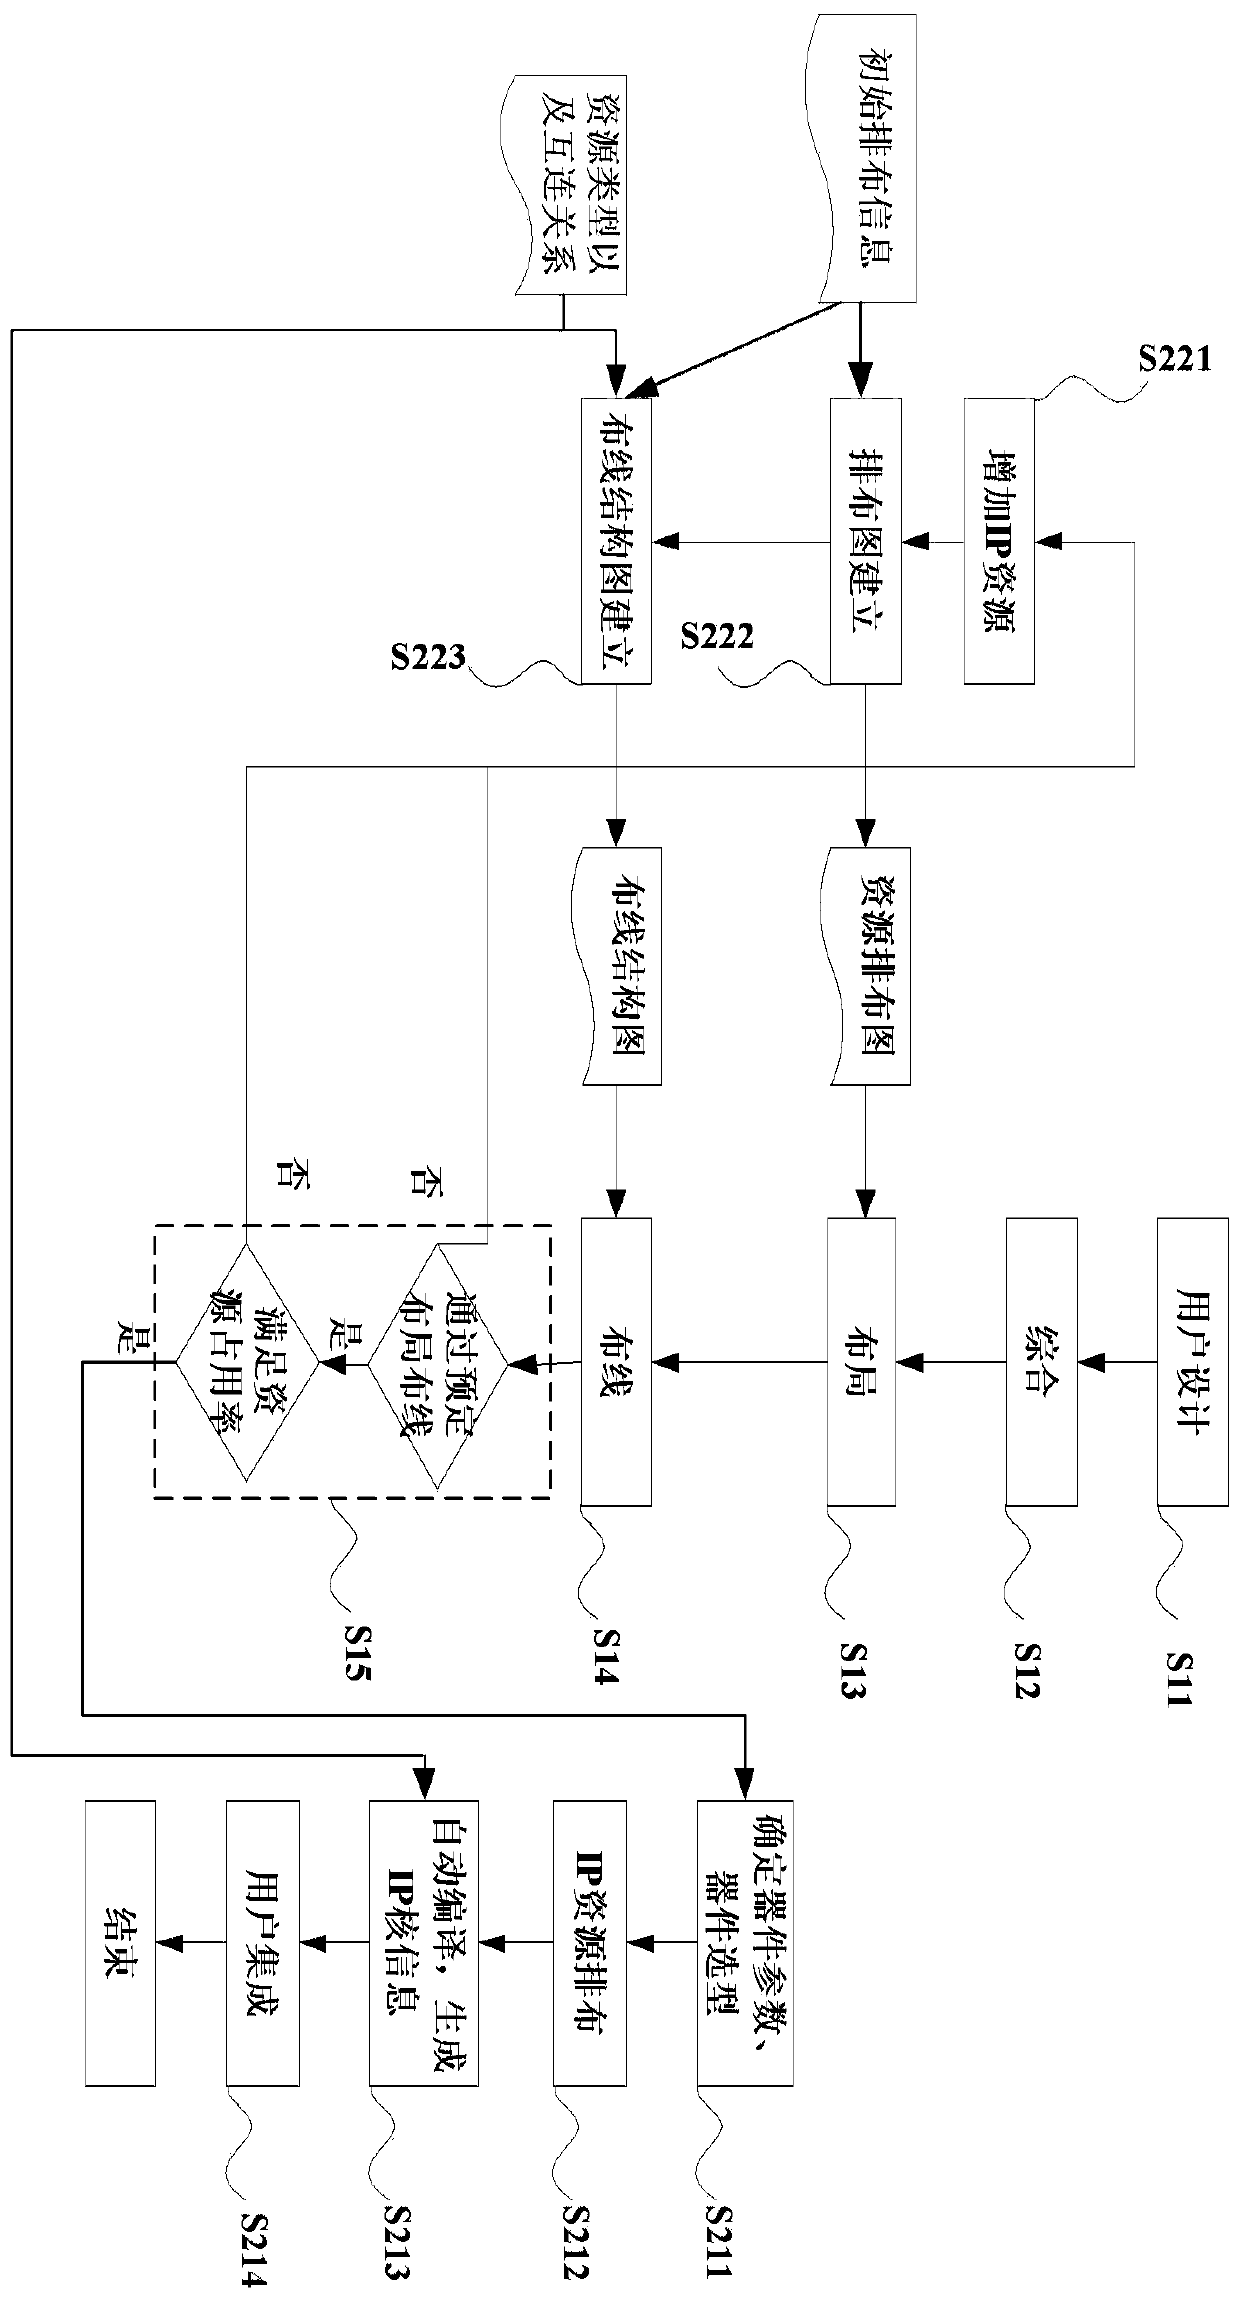 Design method of FPGA IP core